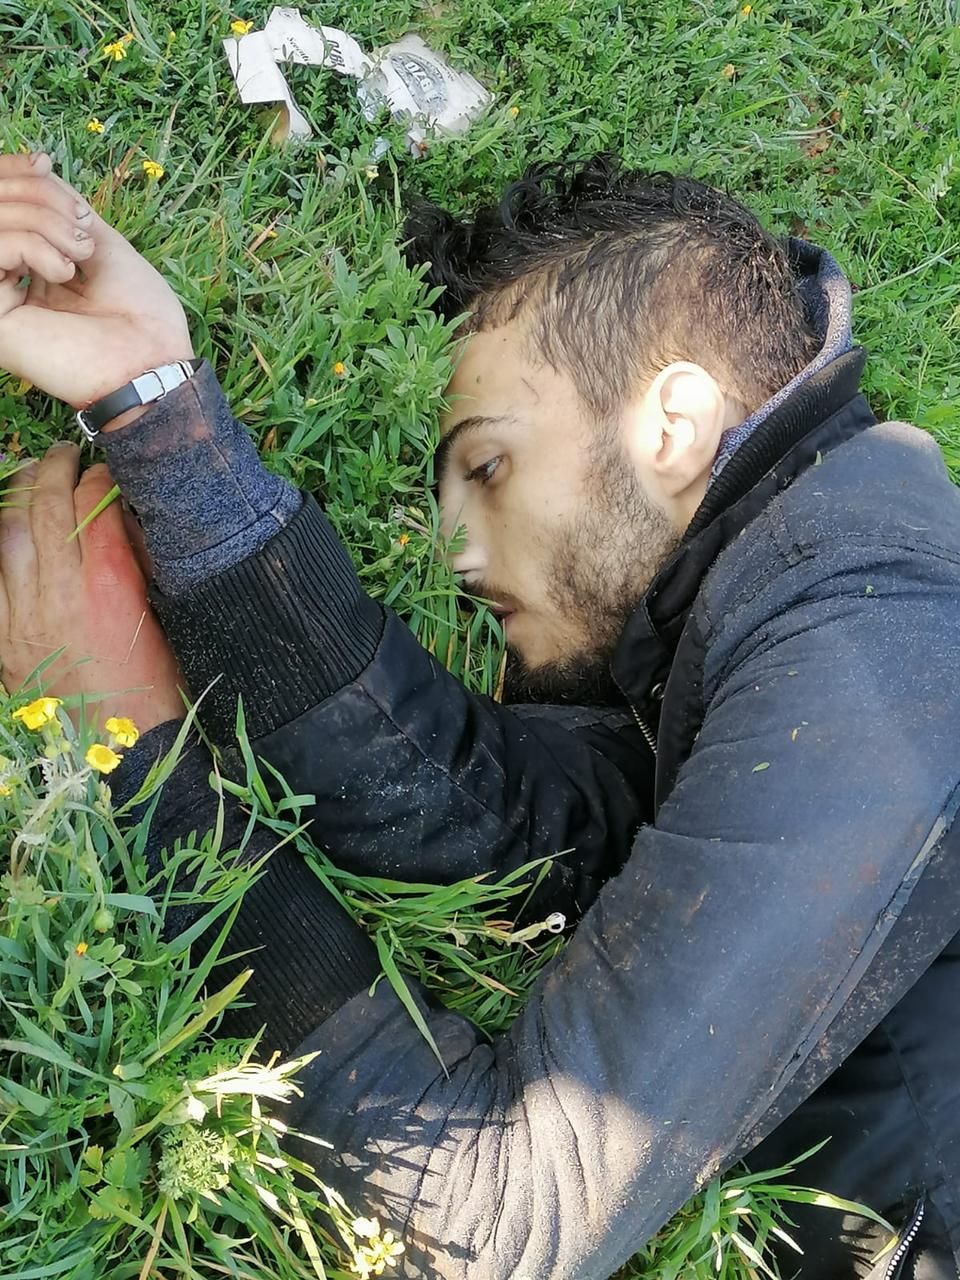 العثور على المواطن عبدالرحمن الطحش١٨ عاماً من القرقف - عكار ، مقتولاً بطلقات نارية في منطقة الهرمل صباح اليوم.